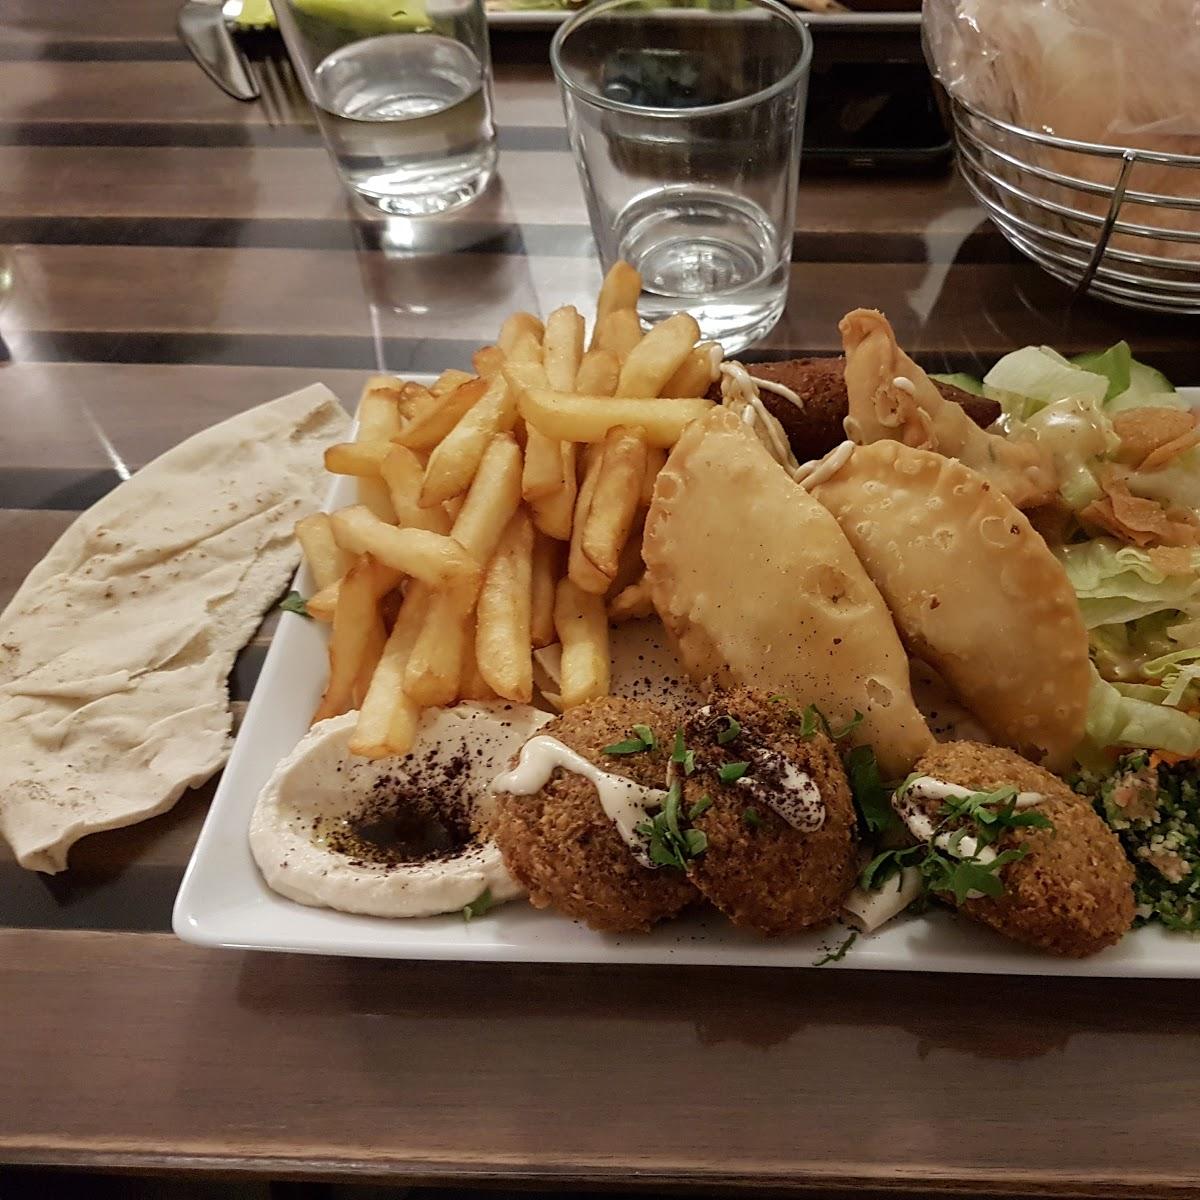 Restaurant "Habibi" in Strasbourg